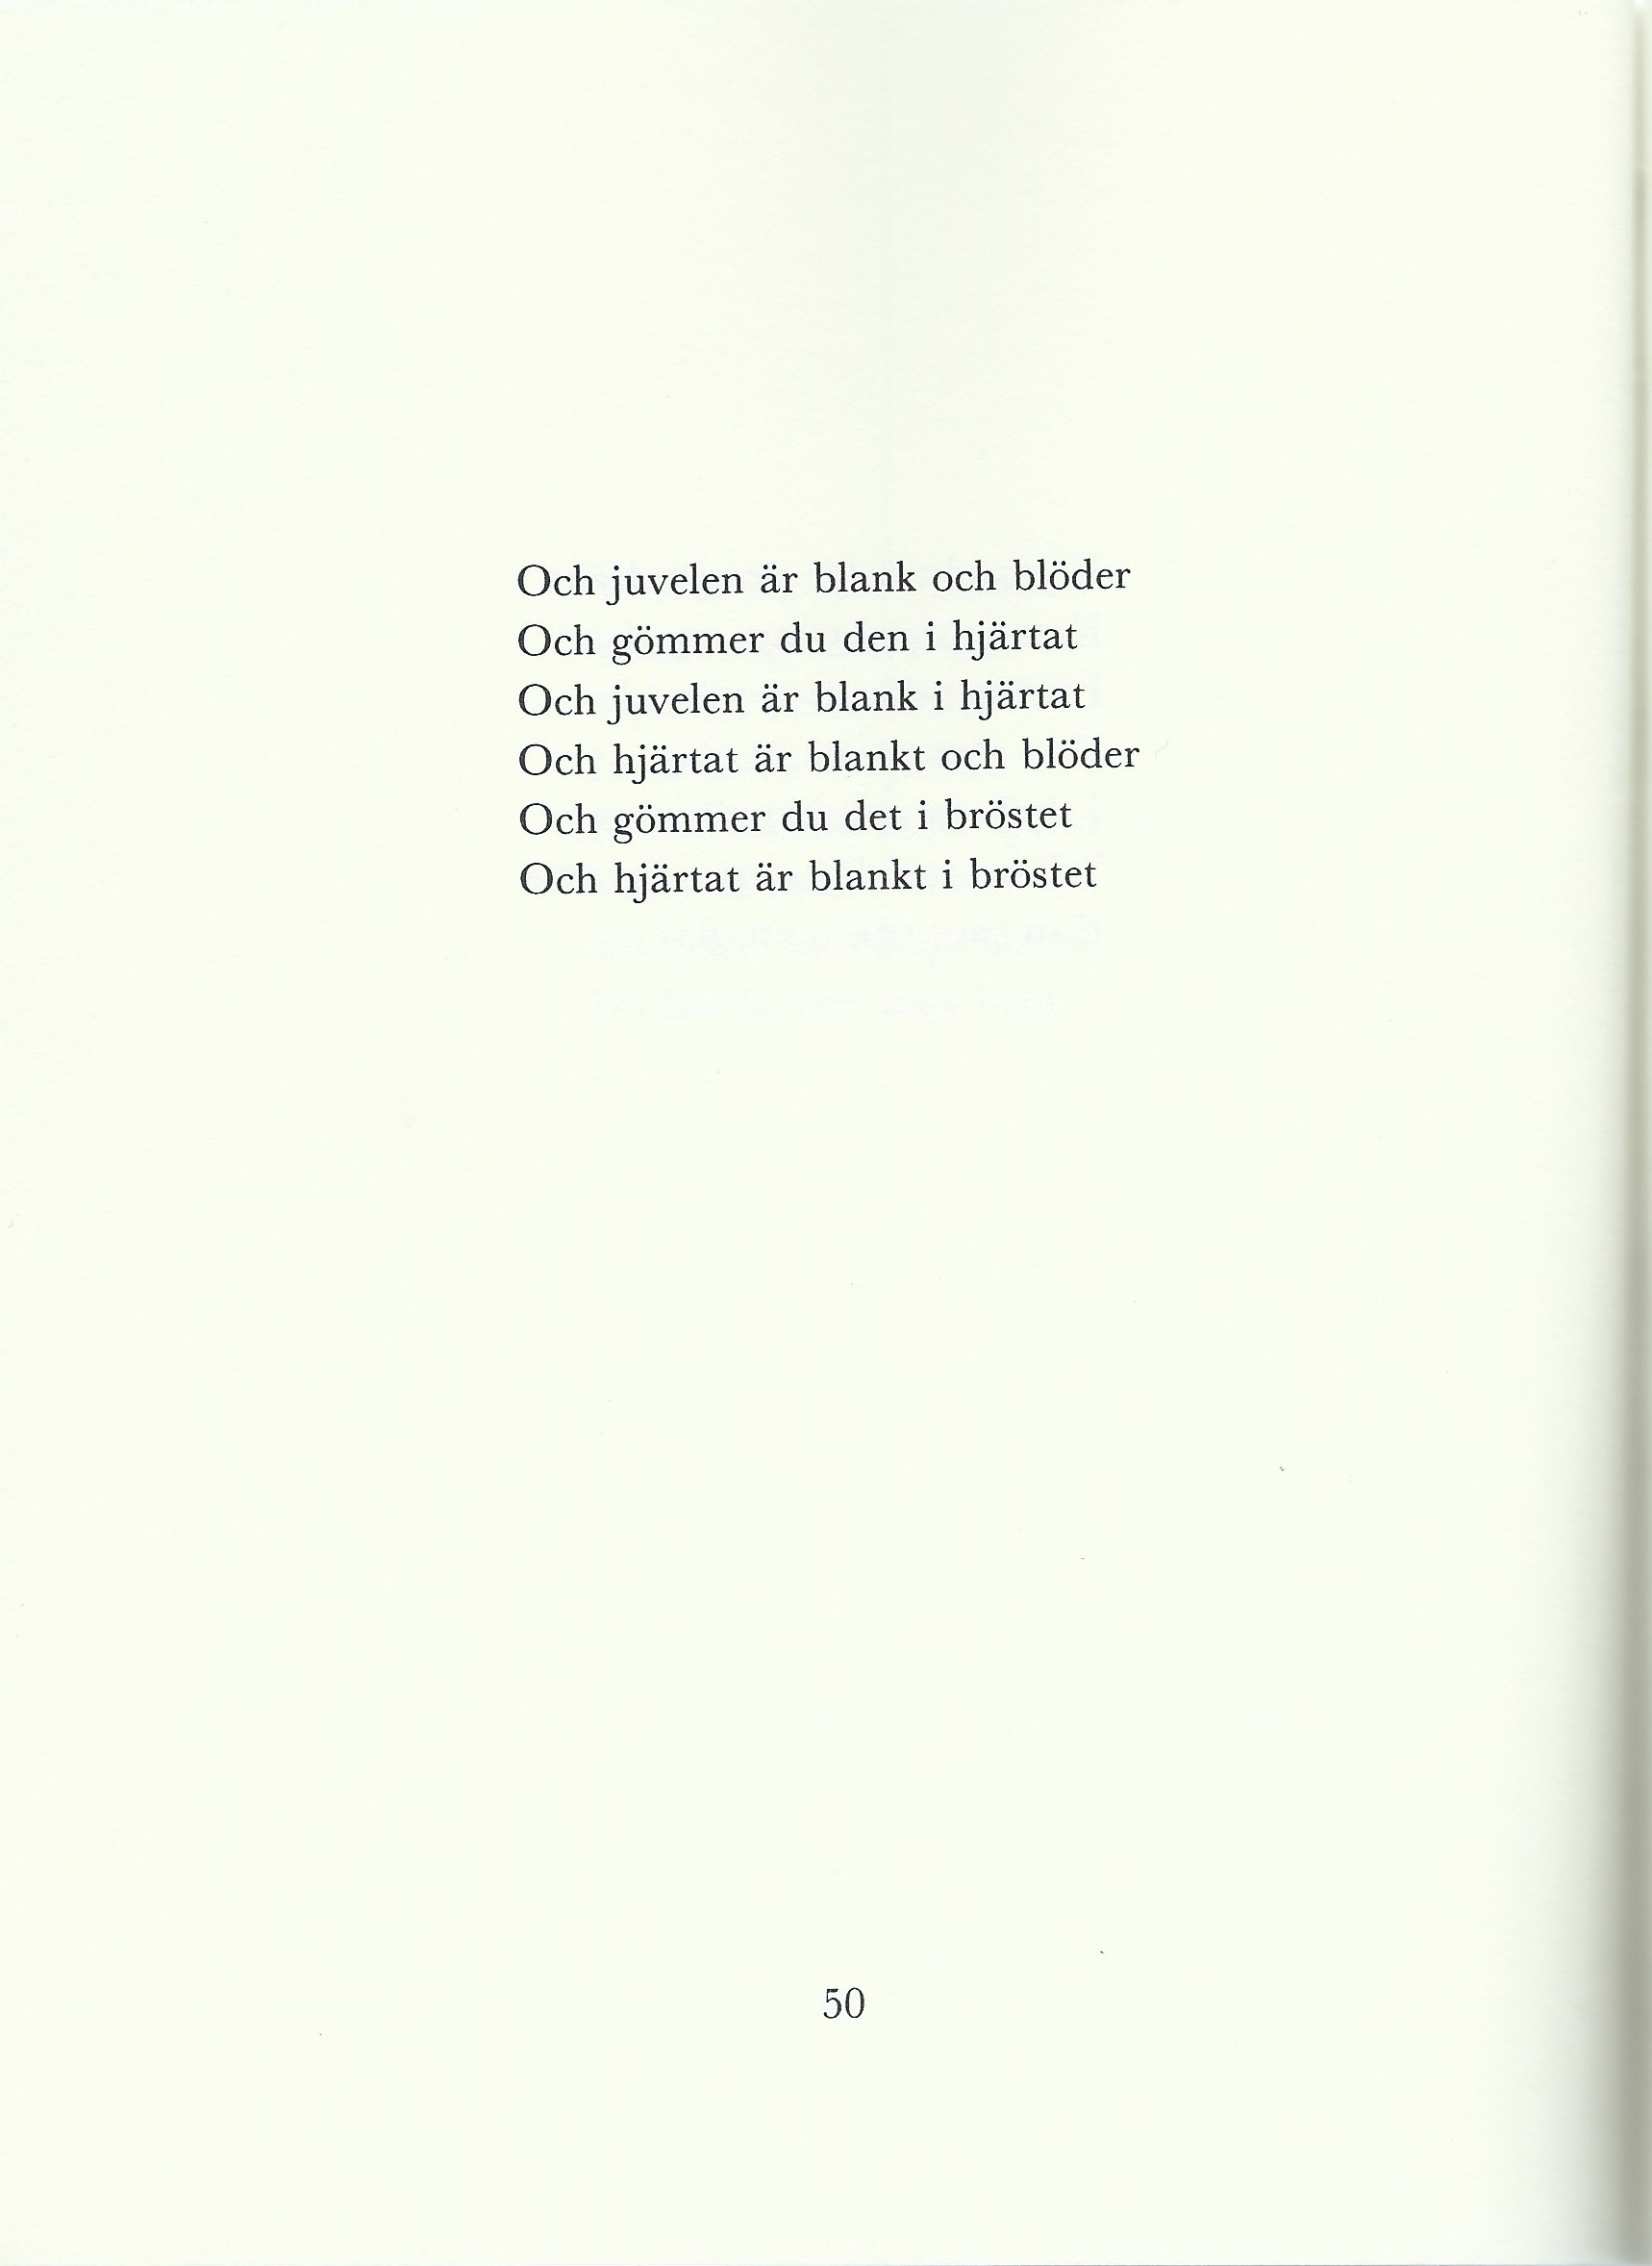 From Ann Jäderlund, <i>Snart går jag i sommaren ut</i> (Soon the Summer I will Enter) (1990).